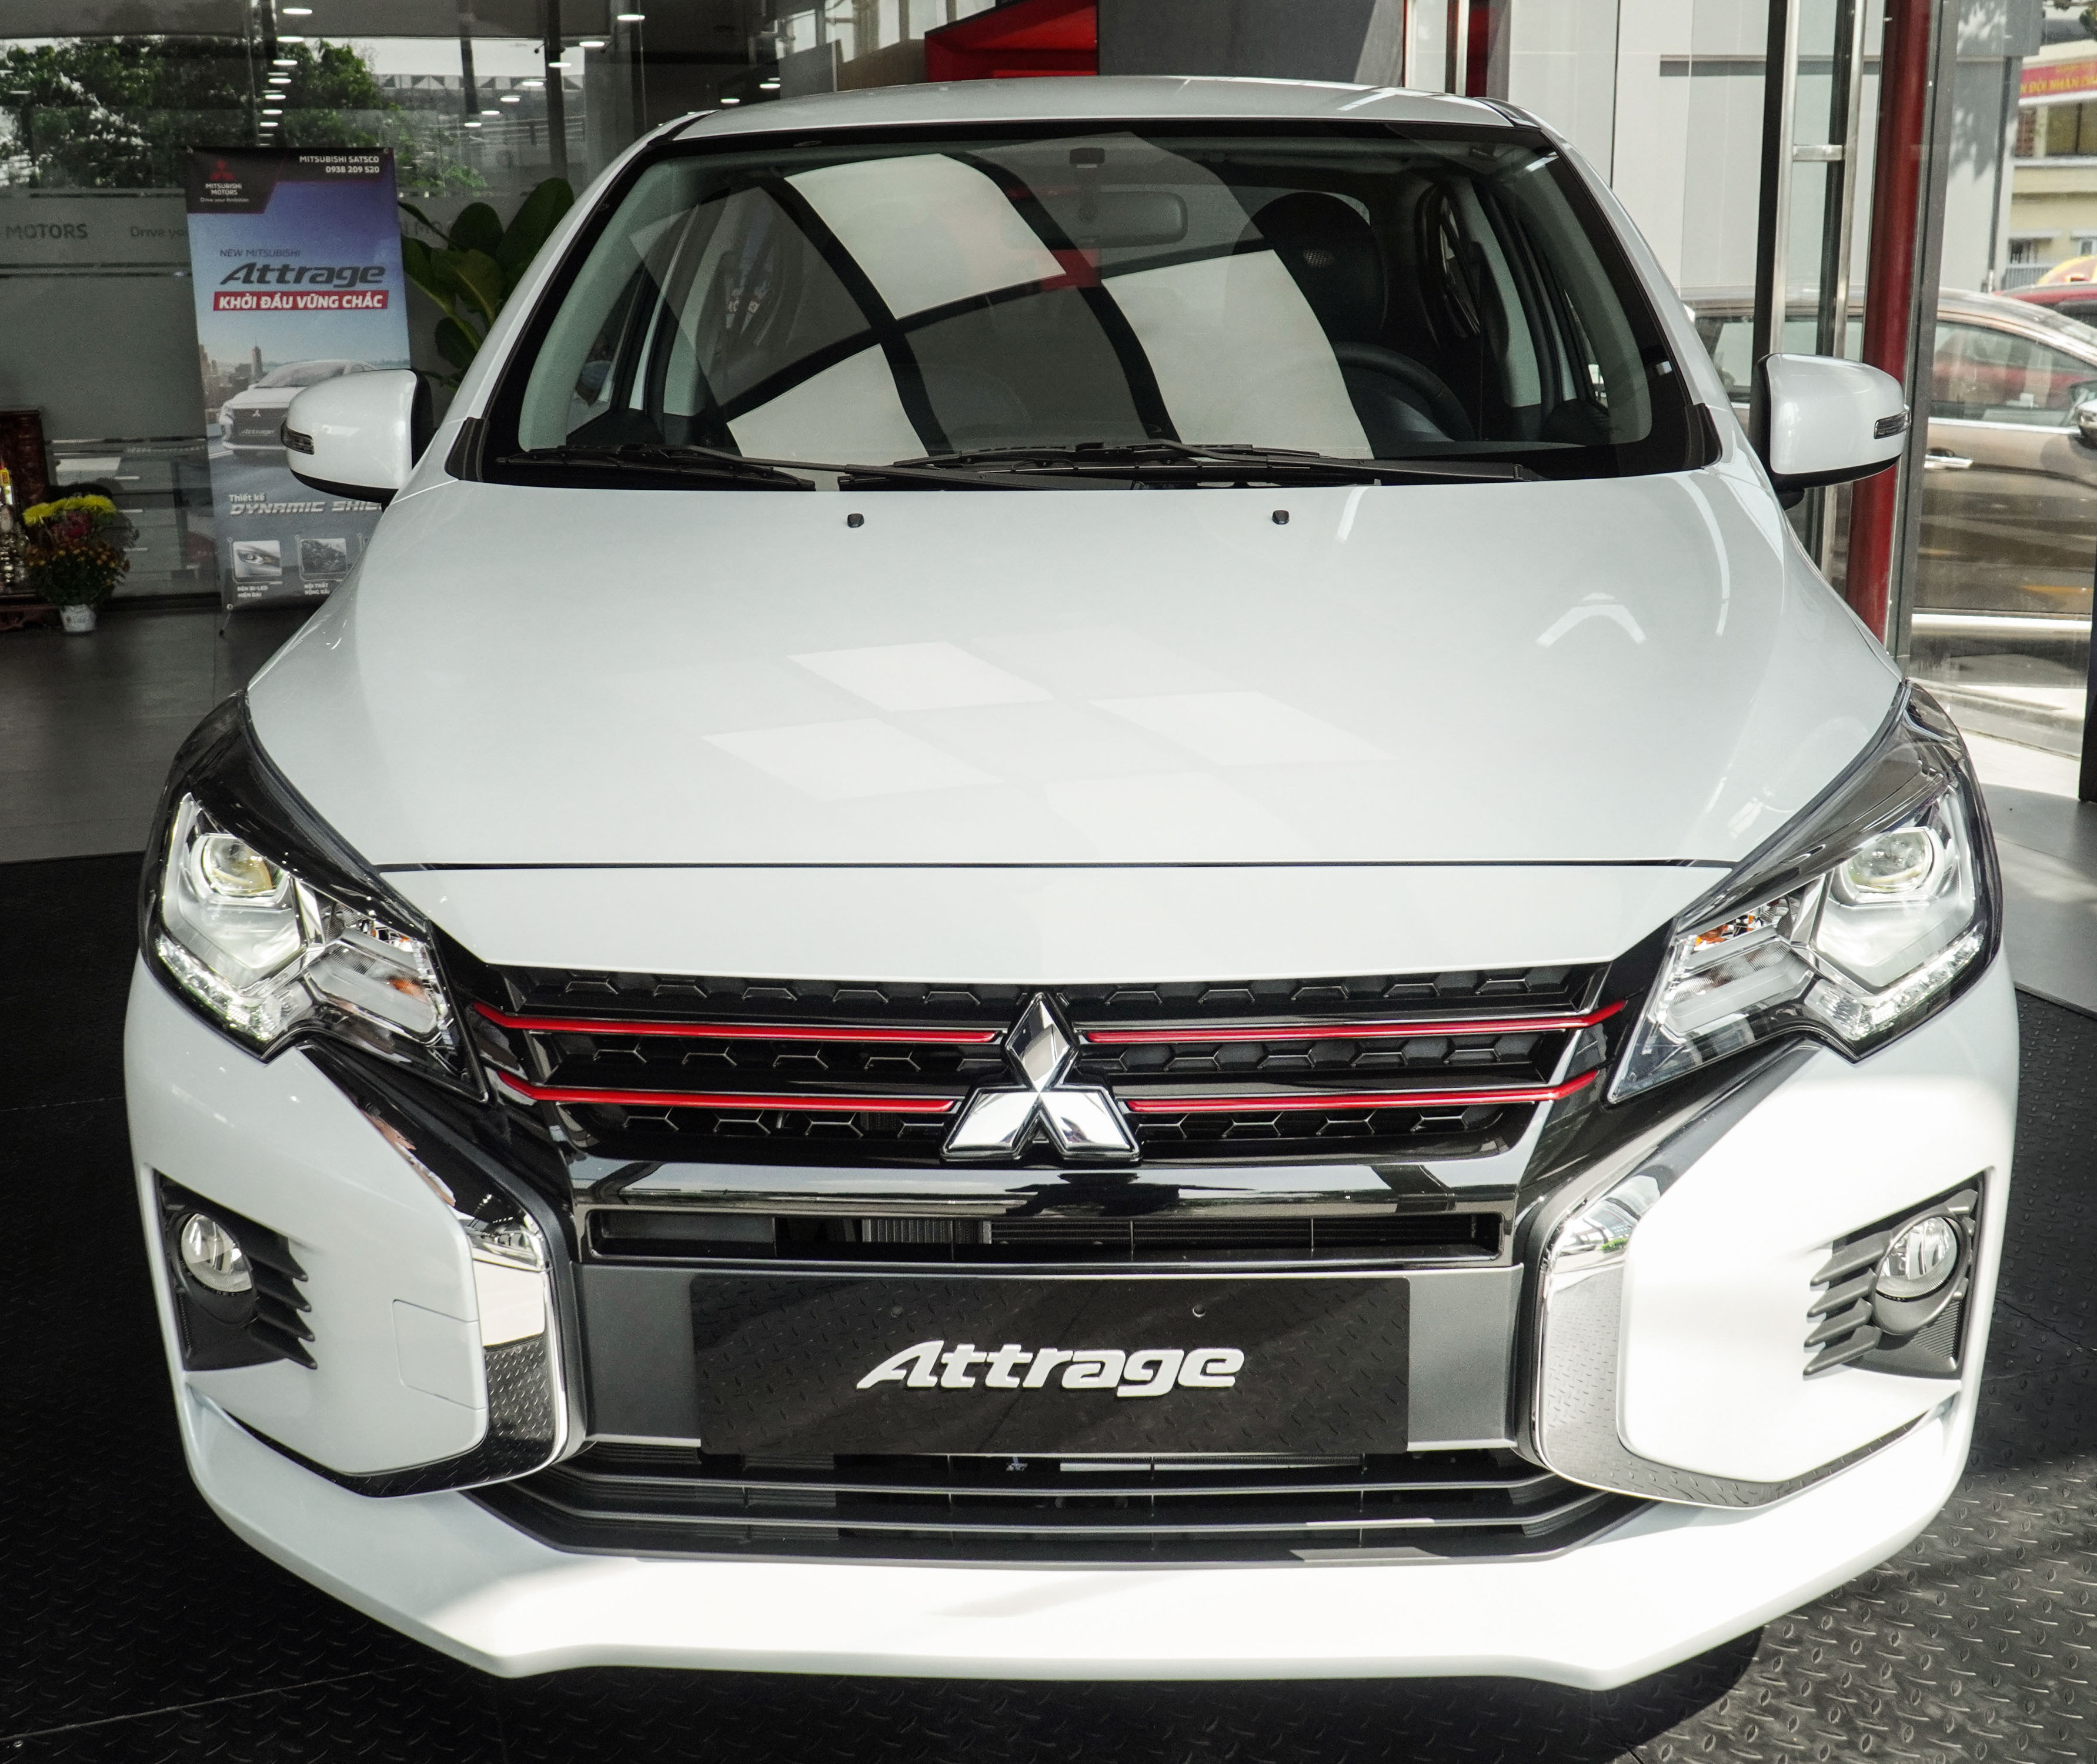 Mitsubishi Attrage CVT Premium 2021 ra mắt, giá 485 triệu đồng attrage-2020-trang-ngoai-that-3.jpg